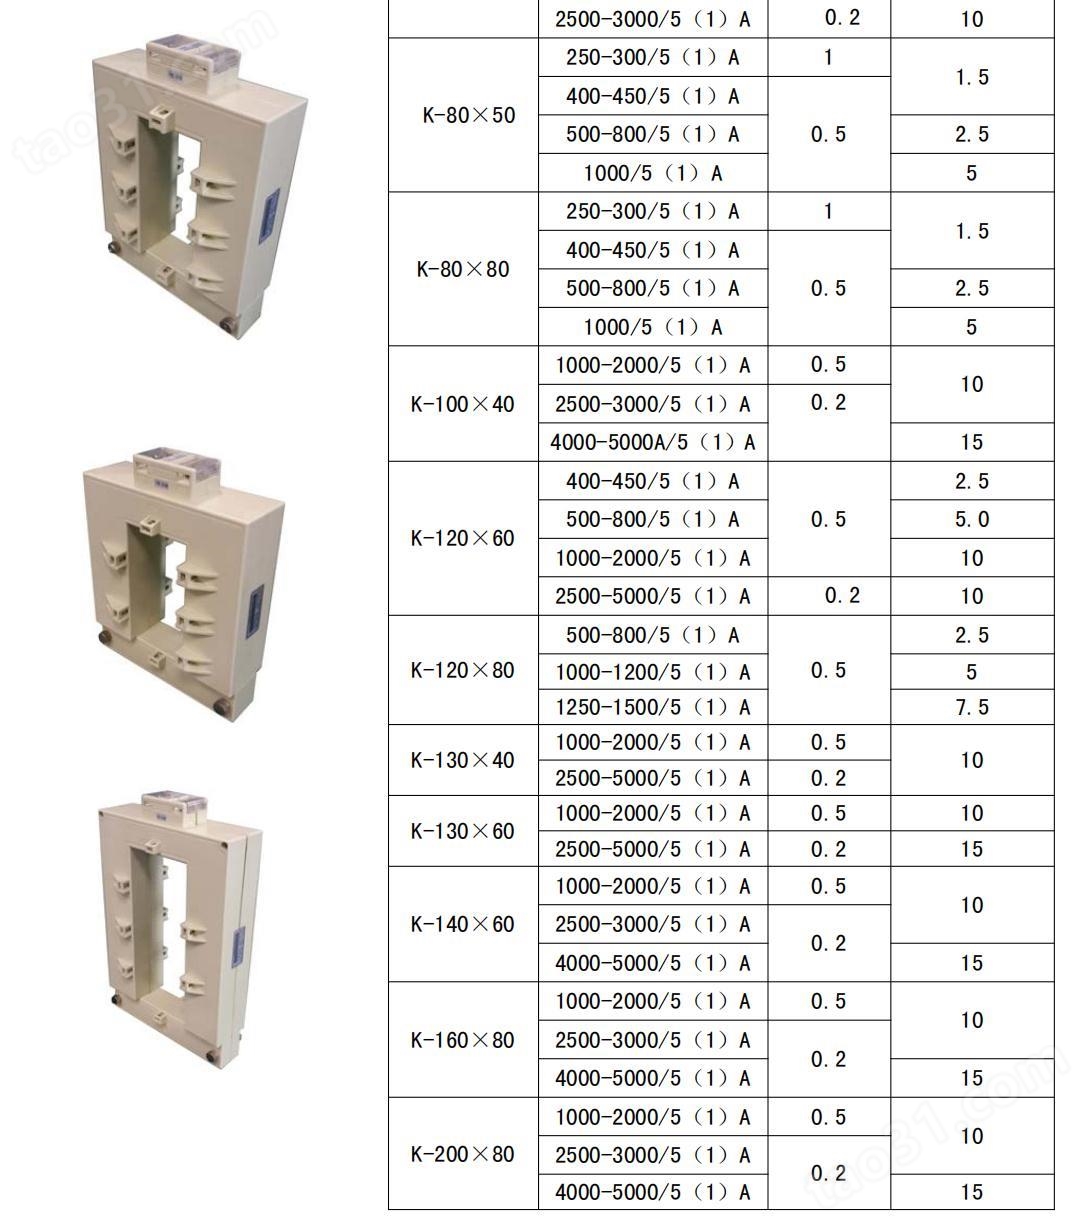 安科瑞 开口式保护型电流互感器 AKH-0.66/K-P K-P-160*80 5000/5